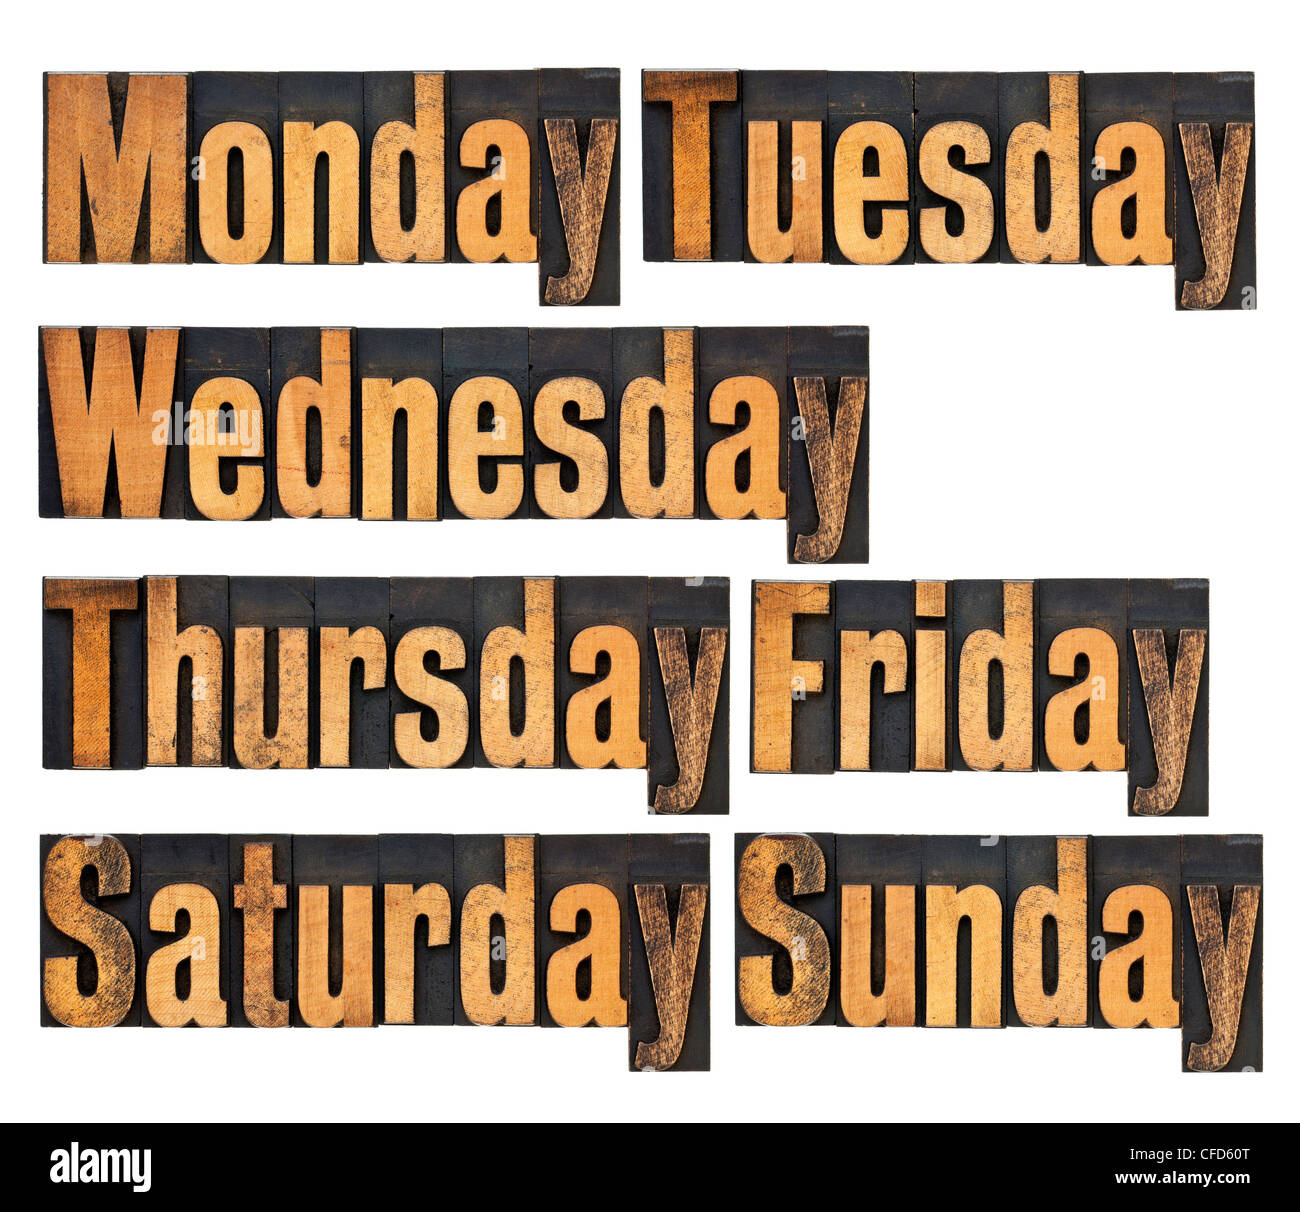 Sept jours de semaine du lundi au dimanche - un collage de mots isolés dans la typographie vintage type de bois Banque D'Images